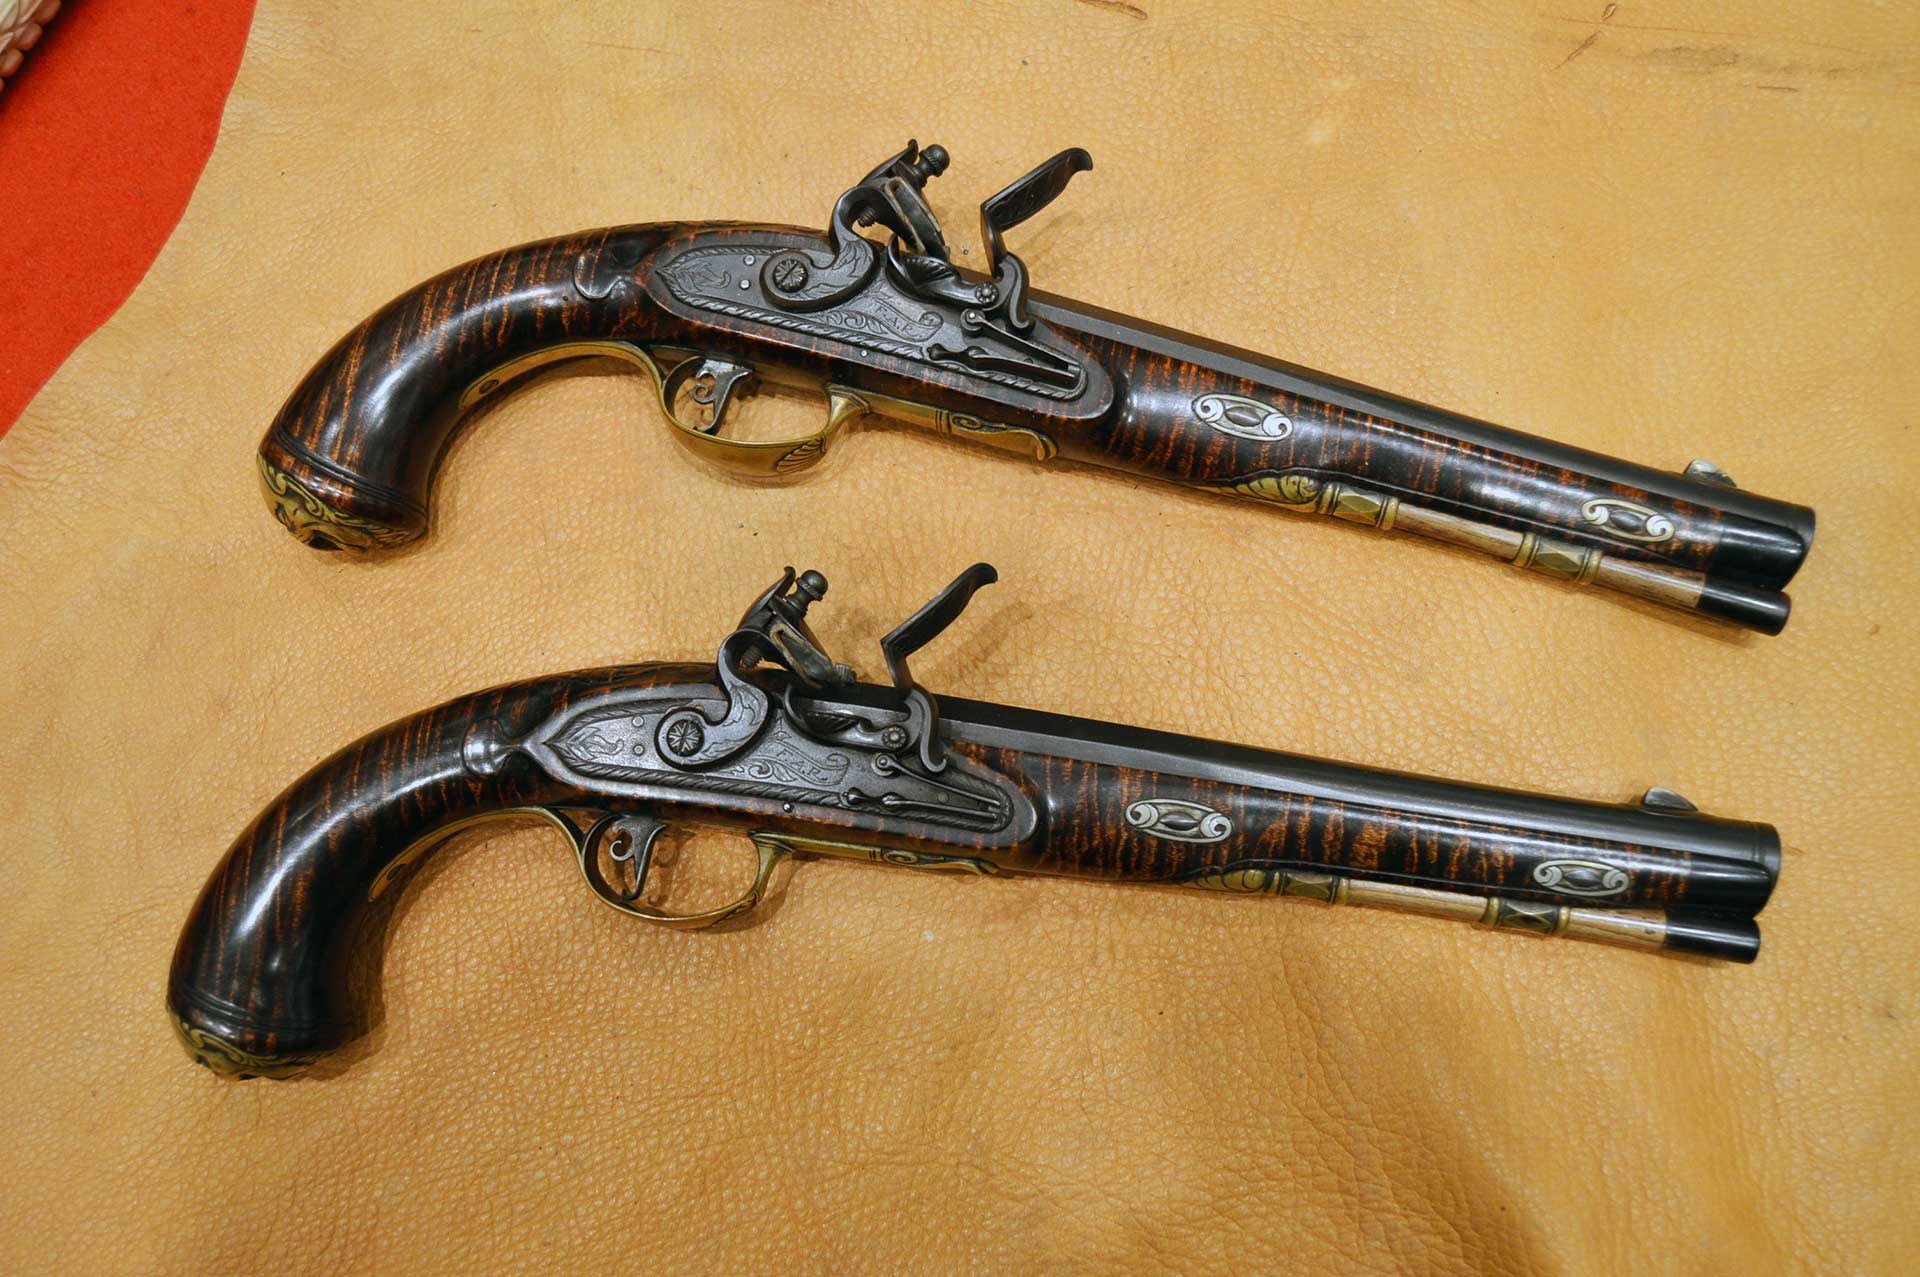 Two flintlock pistols shown on a deerskin background.